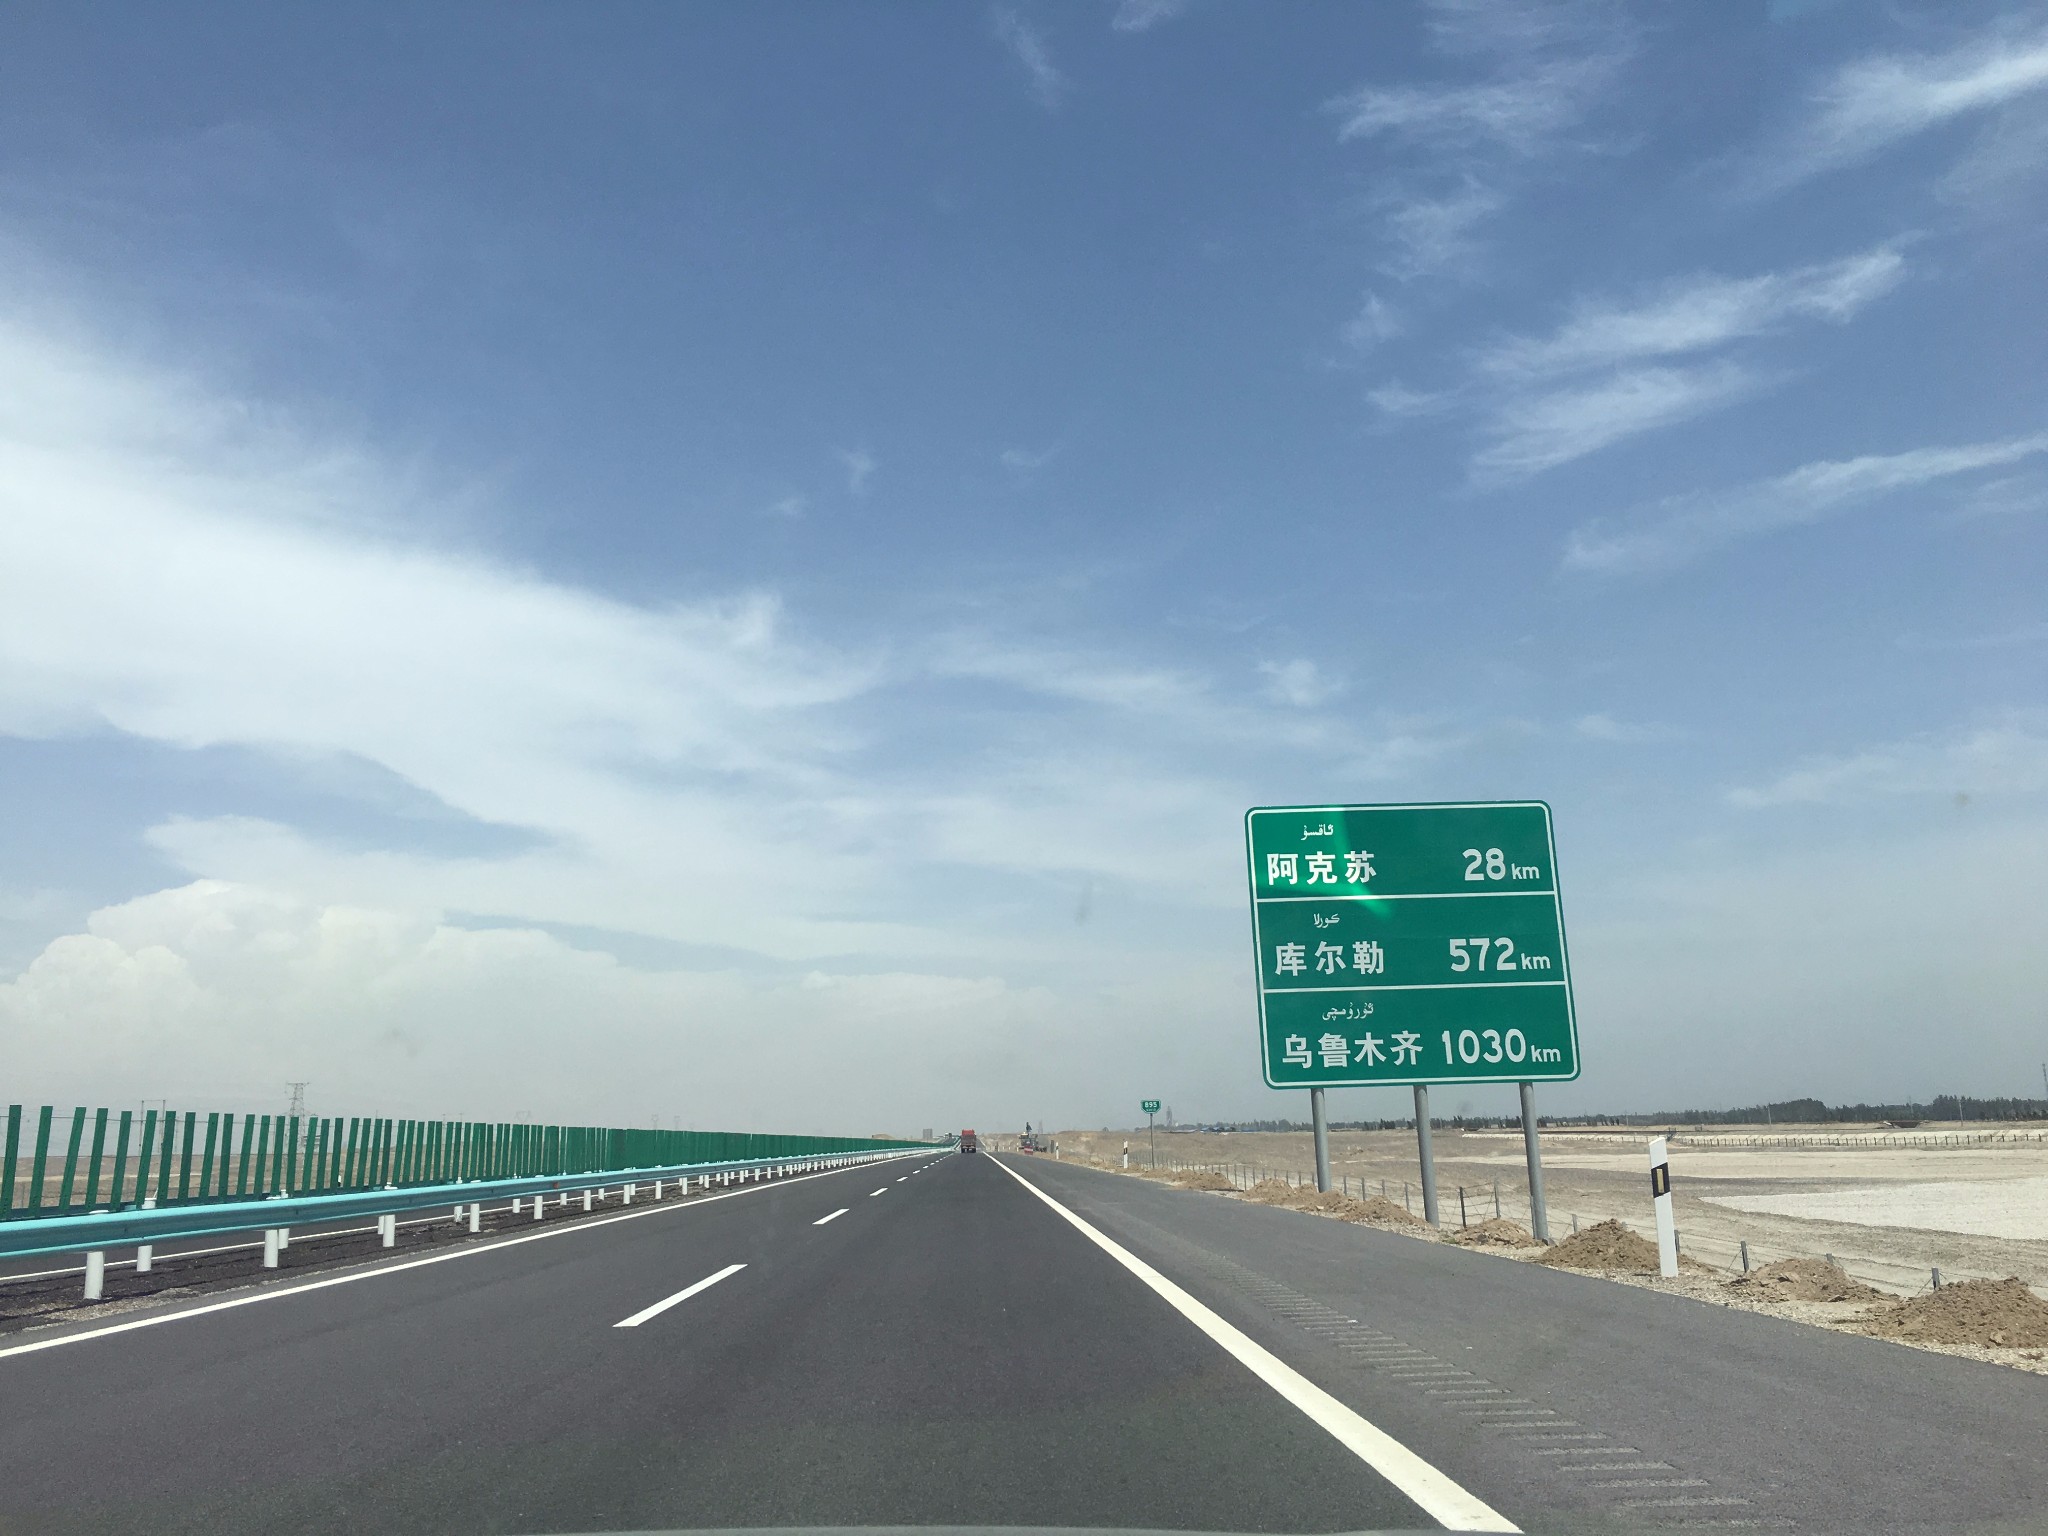 继续向东,新疆高速公路的公里数少则几百多则上千.